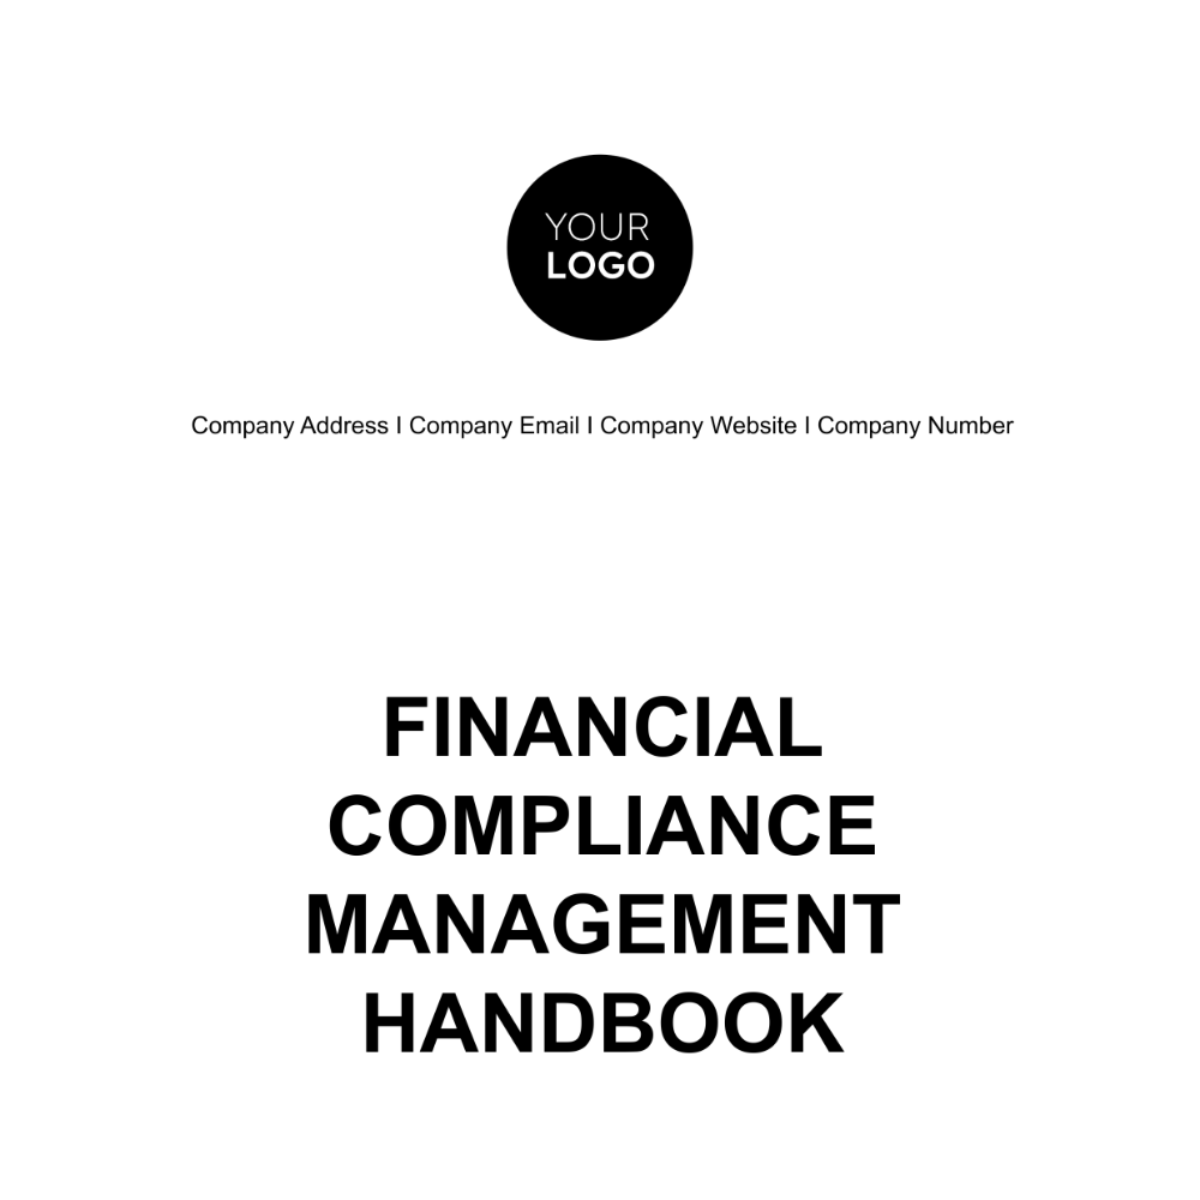 Financial Compliance Management Handbook Template